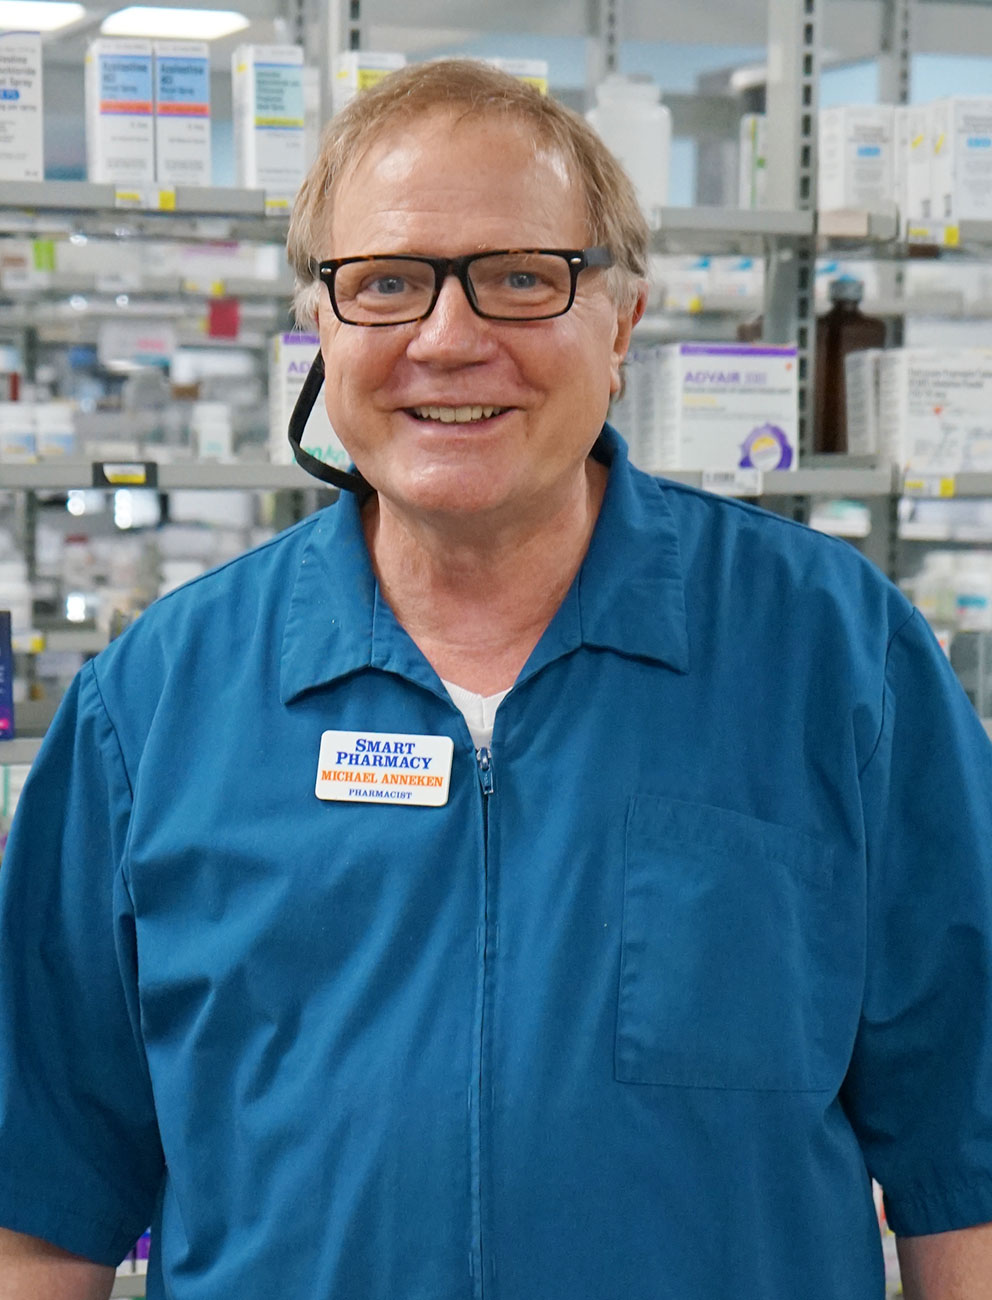 Pharmacist Michael Anneken Smart Pharmacy Franklin NC